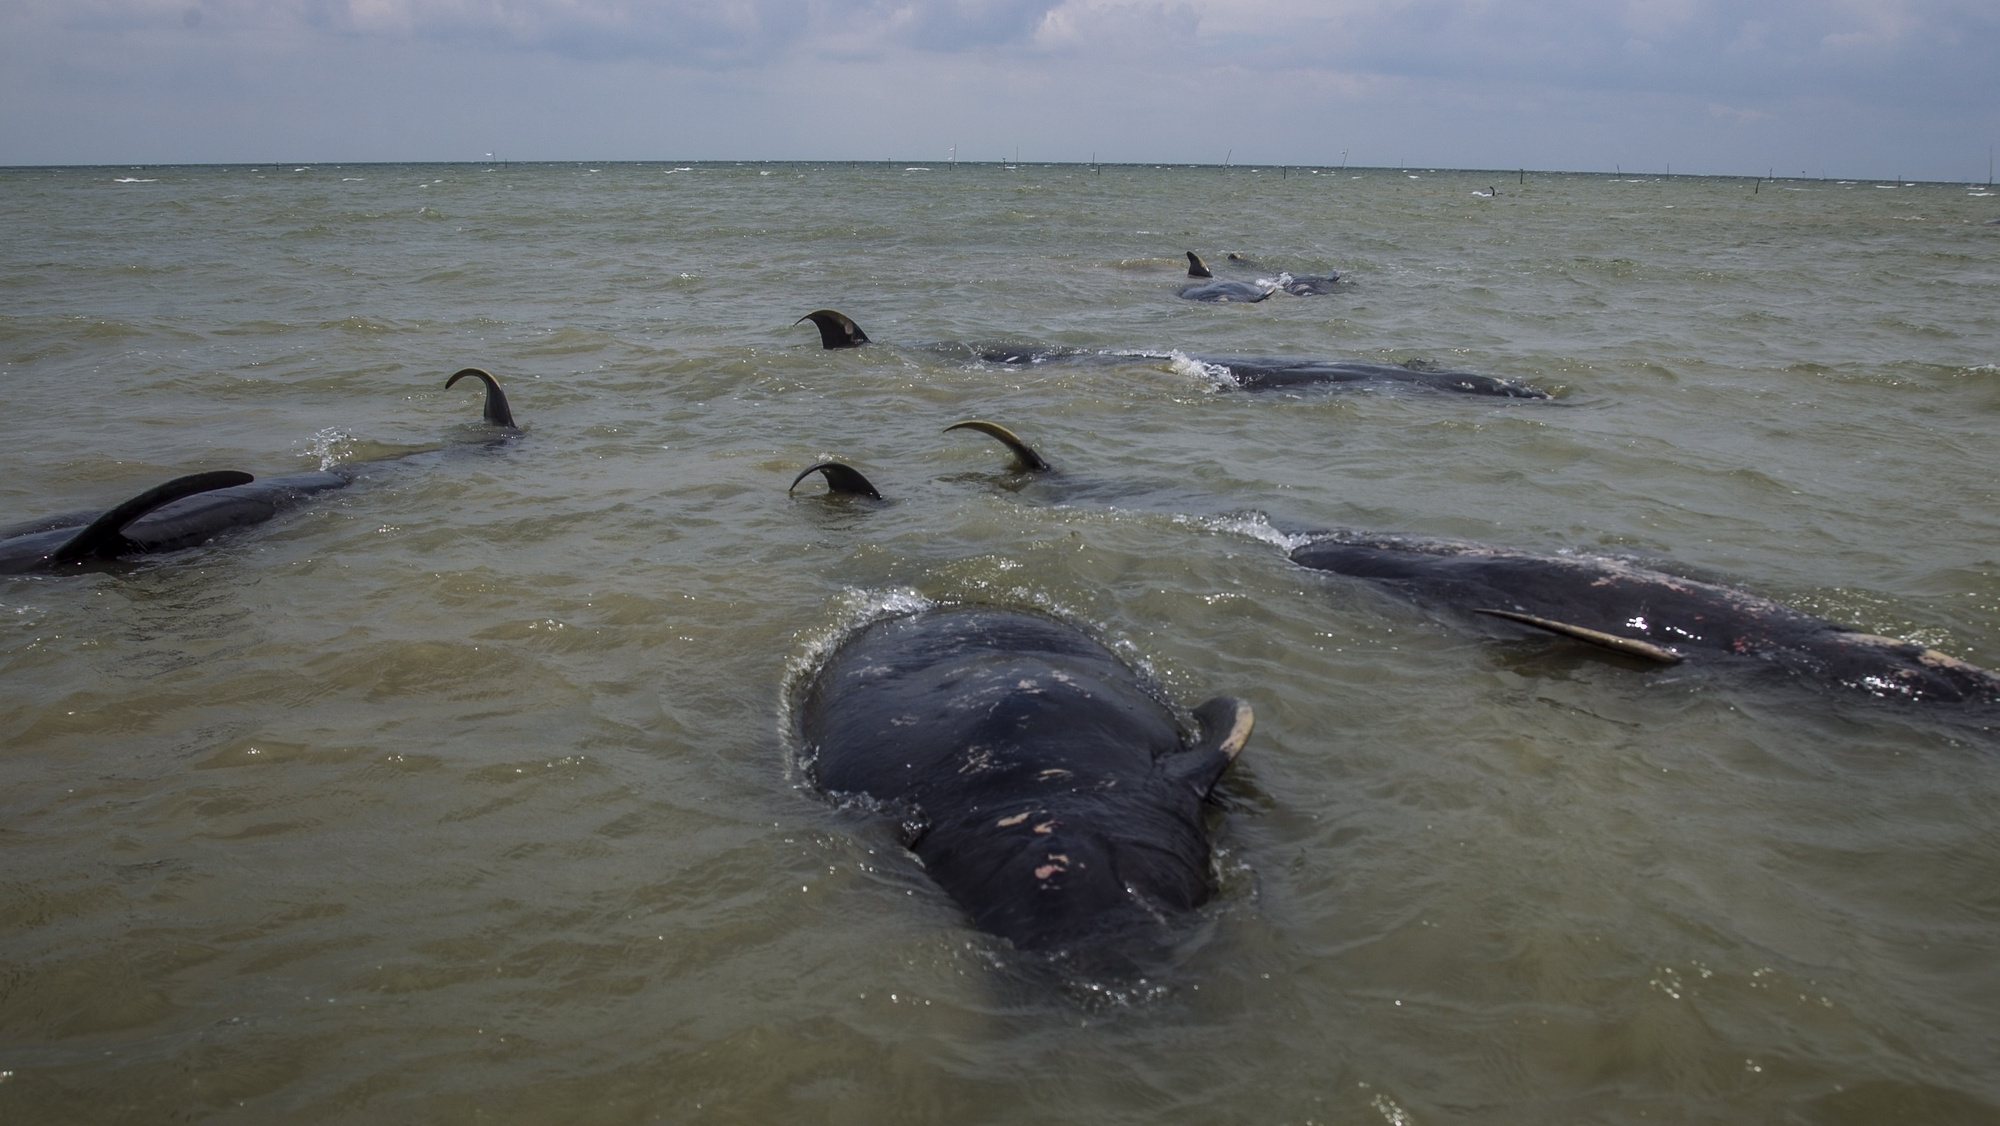 Baleias mortas em Bankalan, Indonésia, 19 de fevereiro de 2021